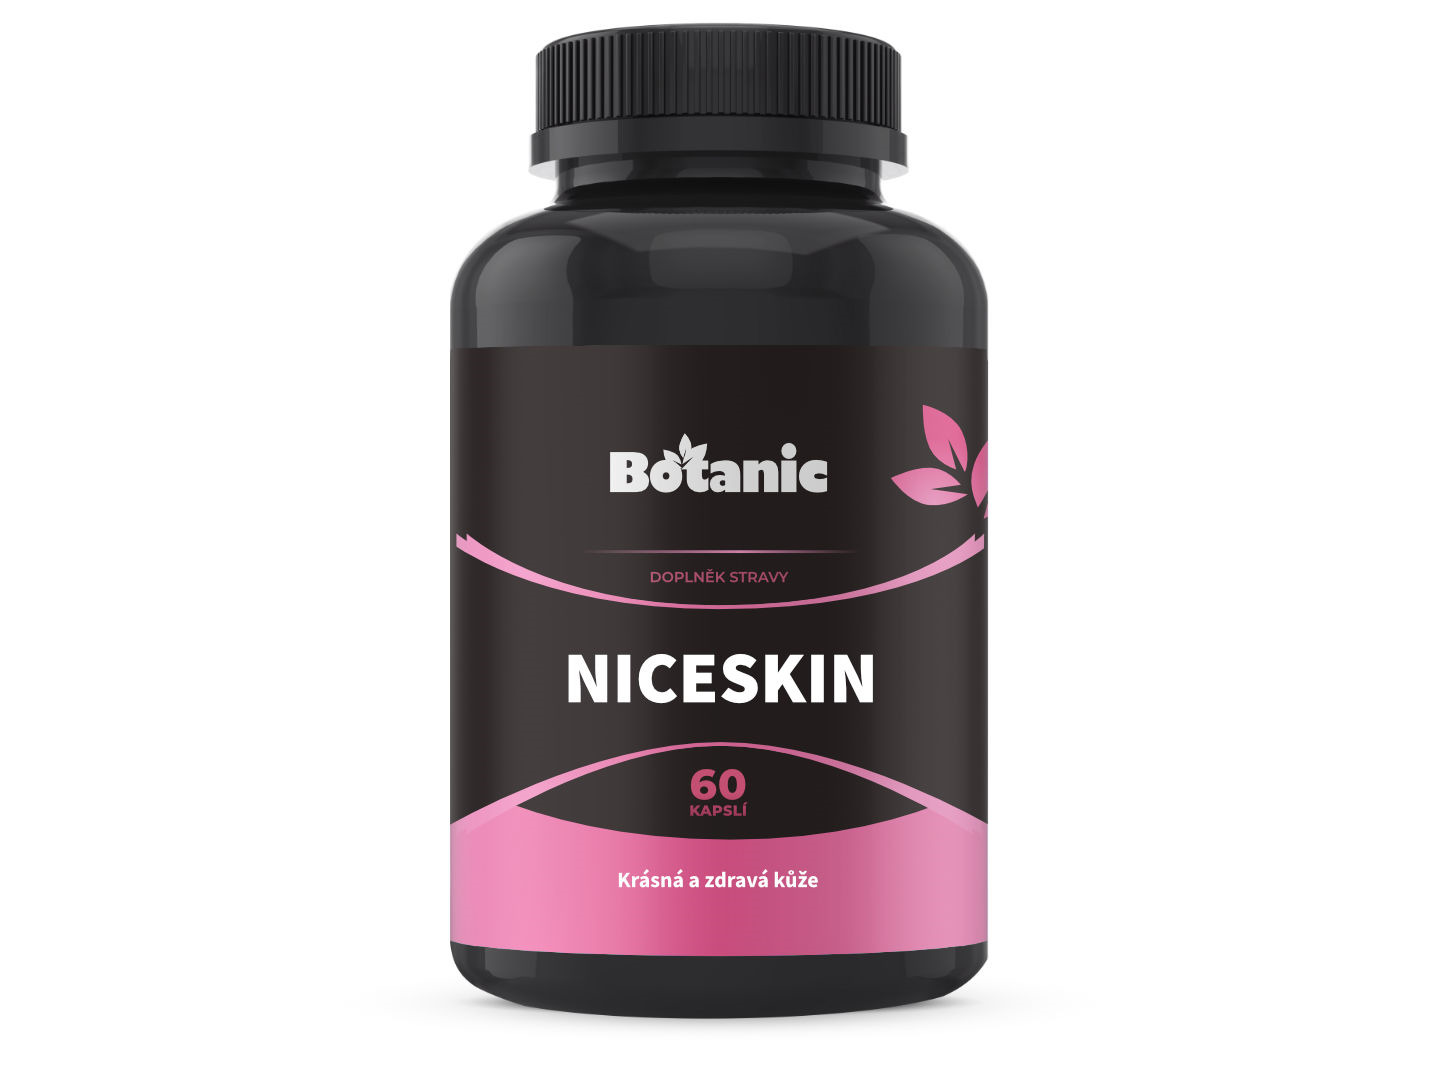 Botanic NiceSkin - Pro krásnou a zdravou kůži 60kap.